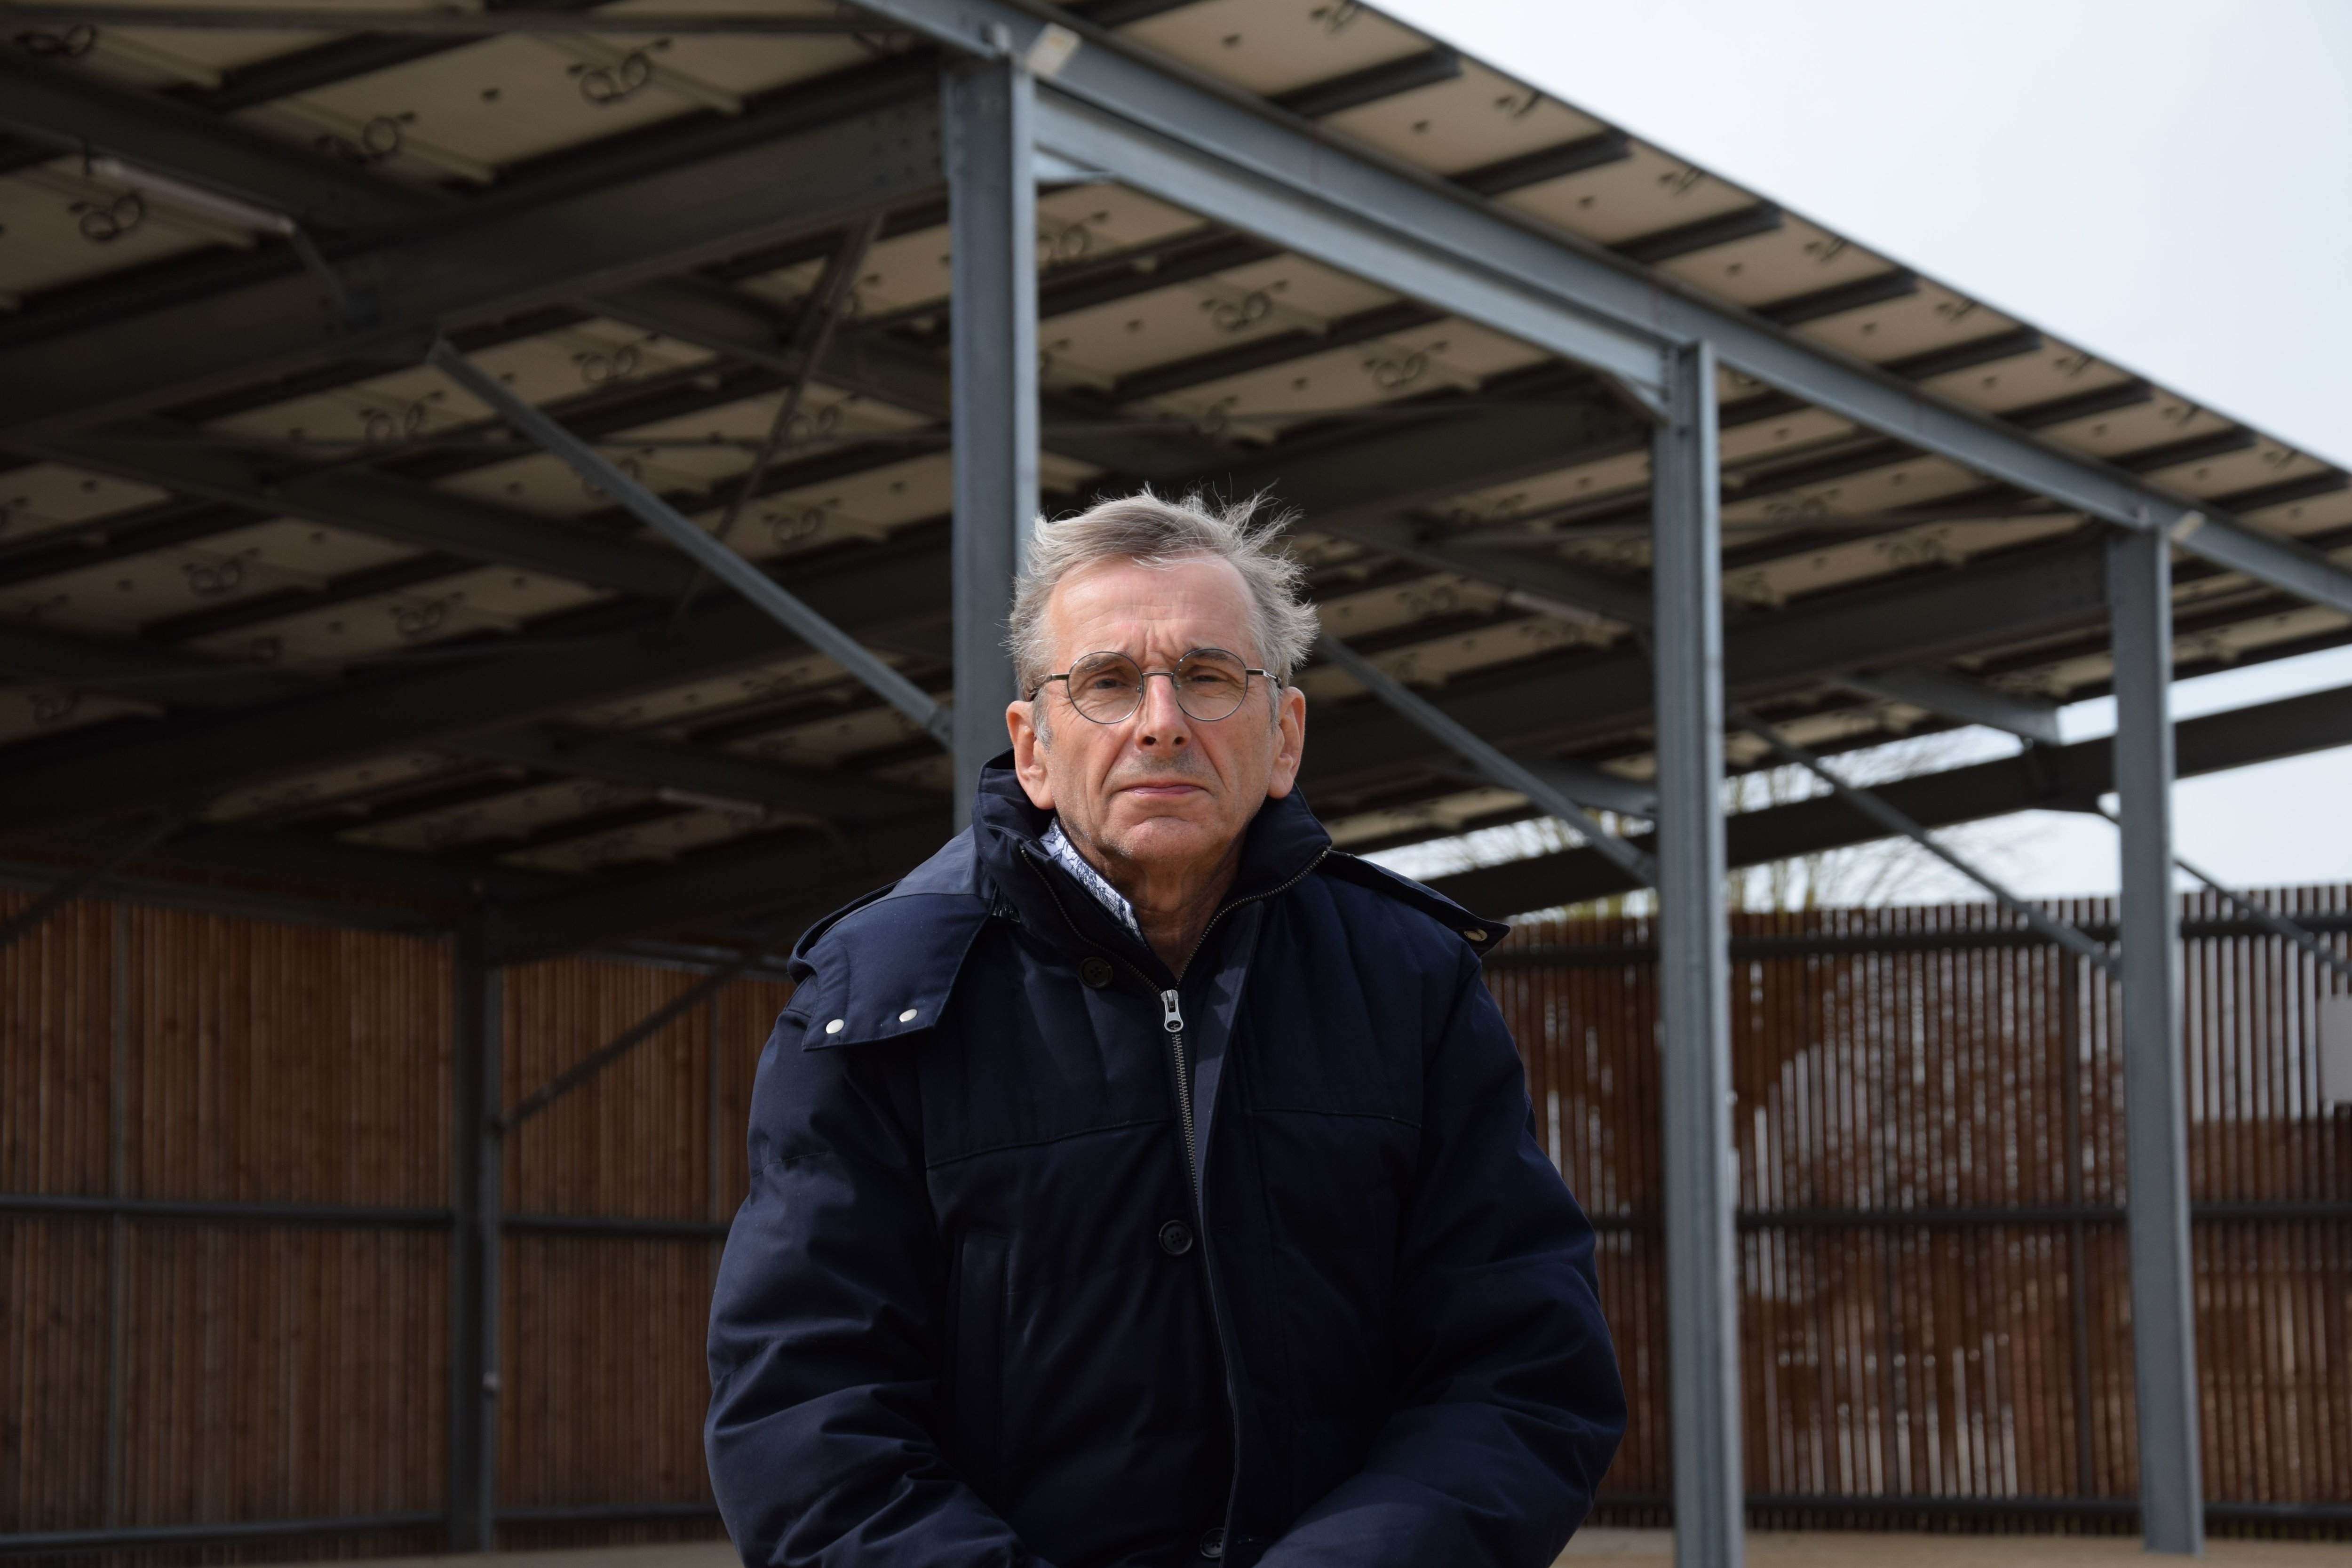 Le maire de Vieuvicq (Eure-et-Loir), Philippe Morelle, pose devant l'ombrière dotée de 253 modules photovoltaïques qui produit l’équivalent de la consommation de 50 habitants. LP/Christophe Blondel